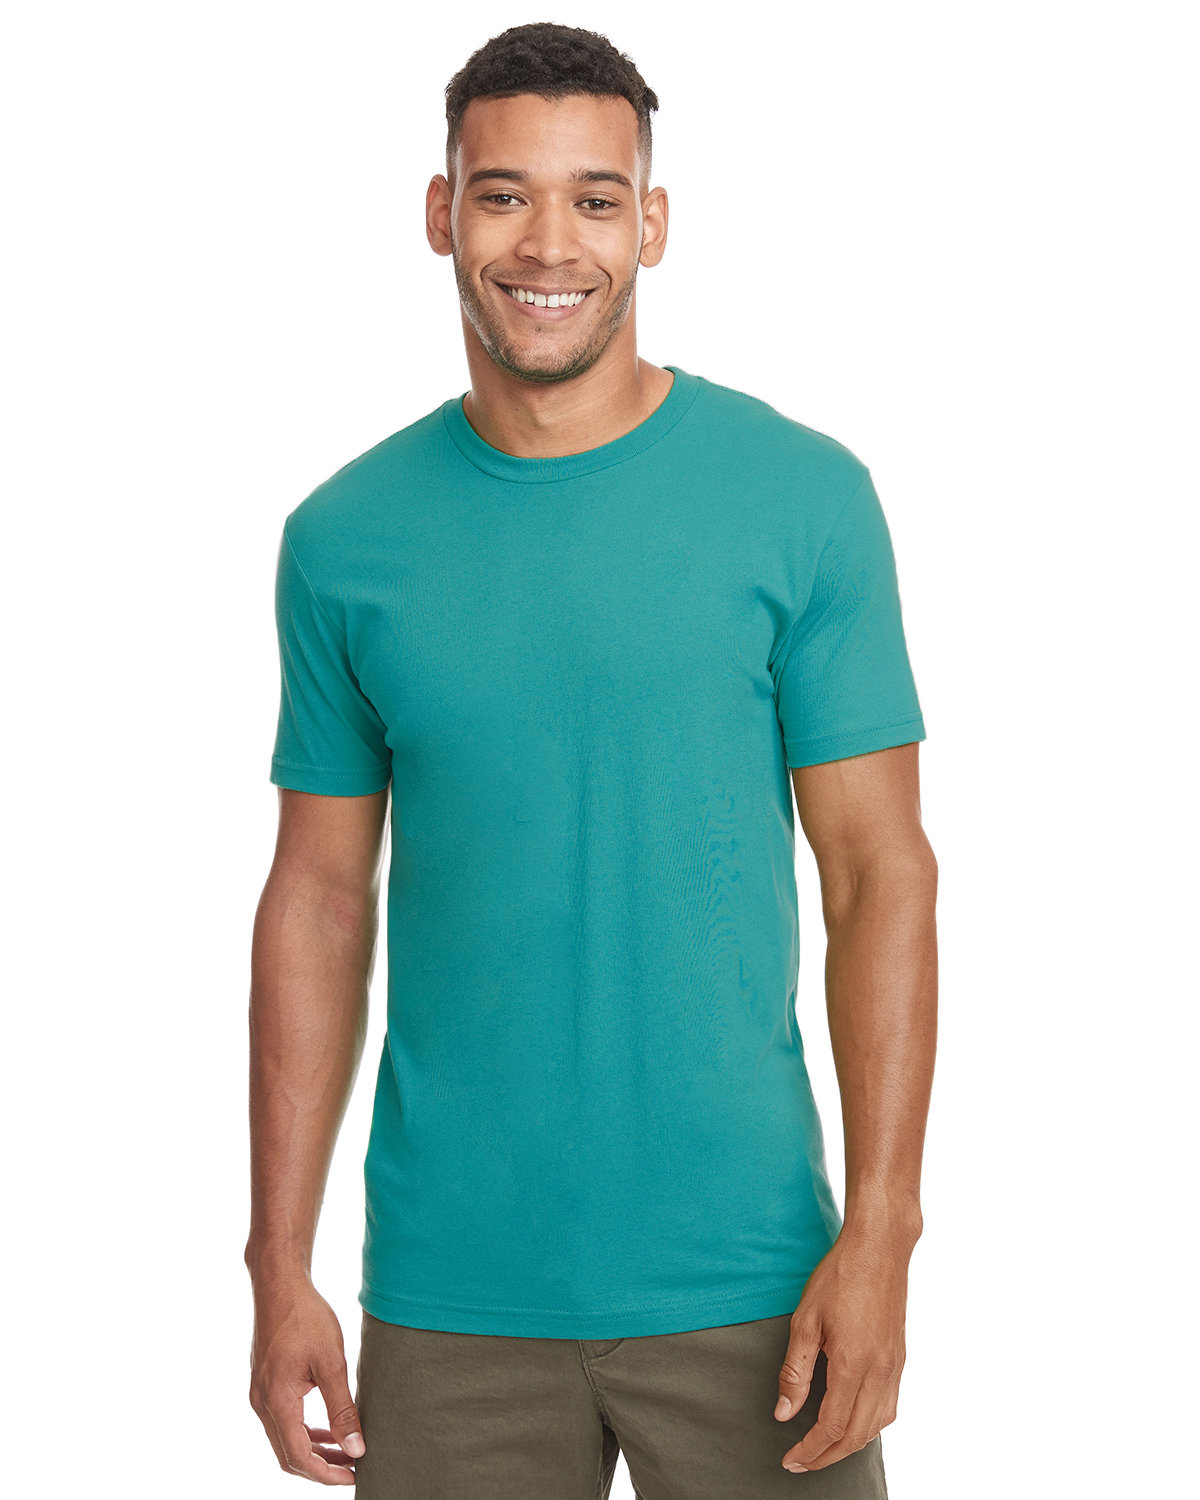 Next Level 3600, Unisex Cotton T-Shirt